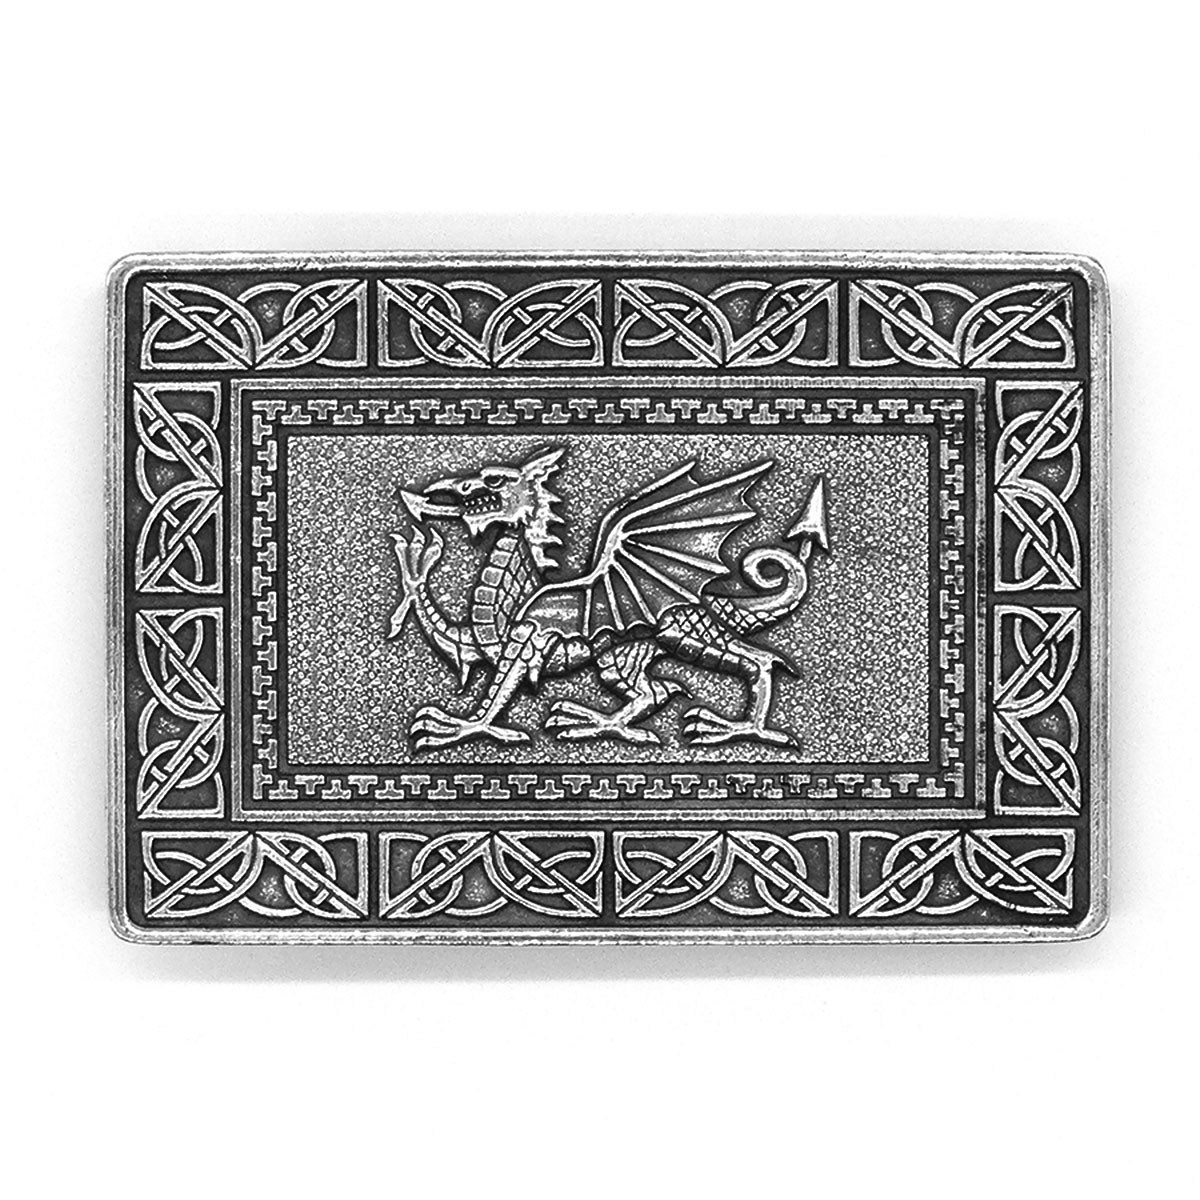 HS Scottish Kilt Belt Buckle Celtic Welsh Dragon Antique Finish/Highland Buckles 